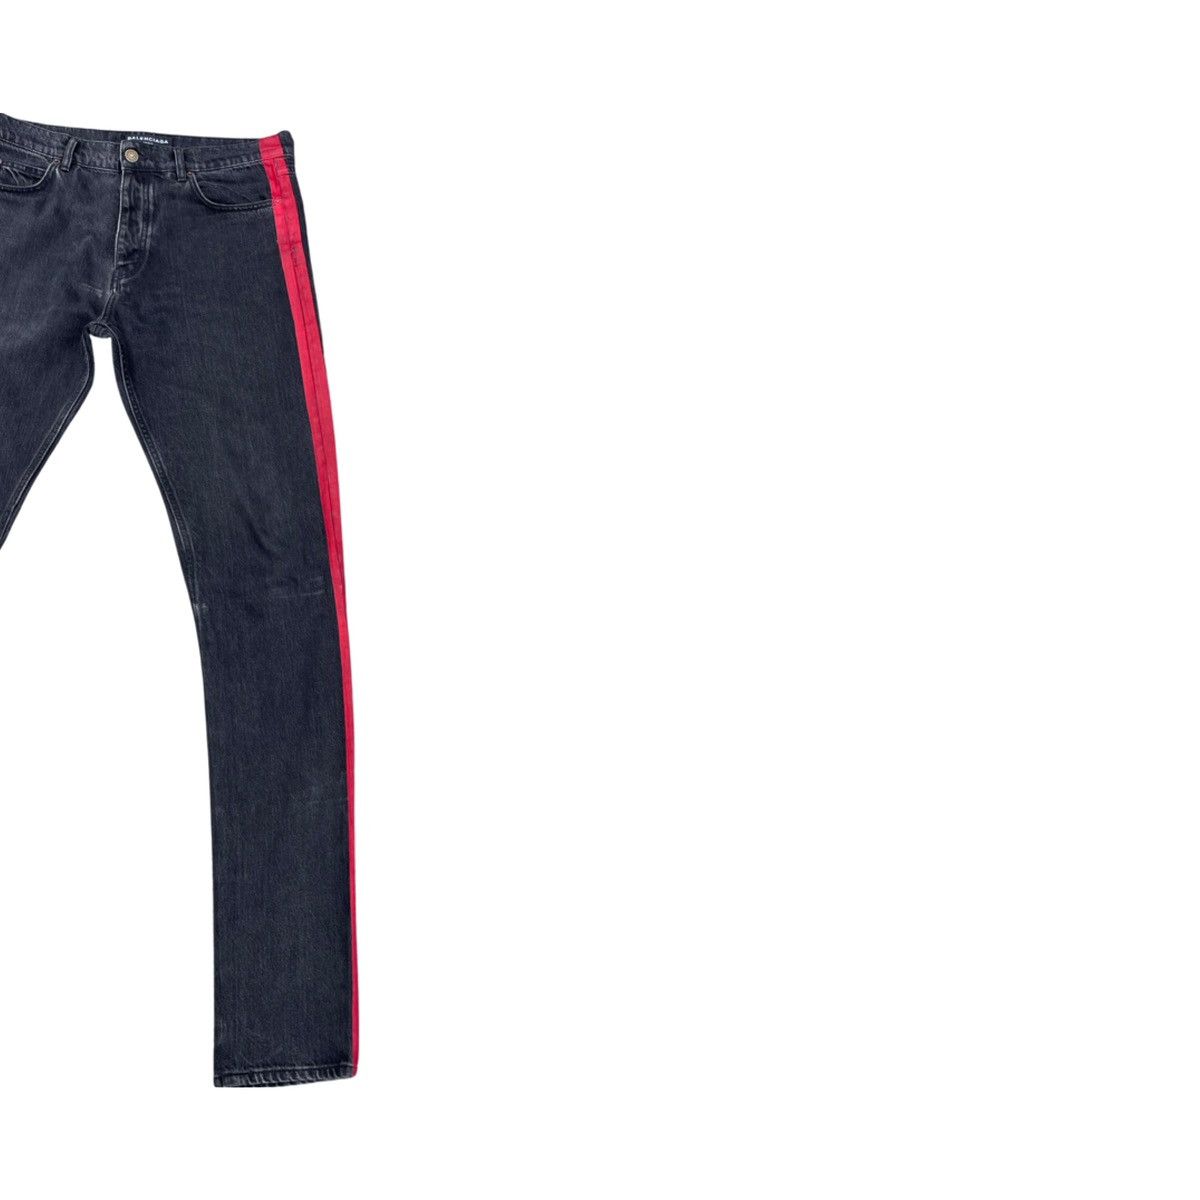 Balenciaga SS17 Red Stripe Jeans Size US 32 / EU 48 - 7 Thumbnail